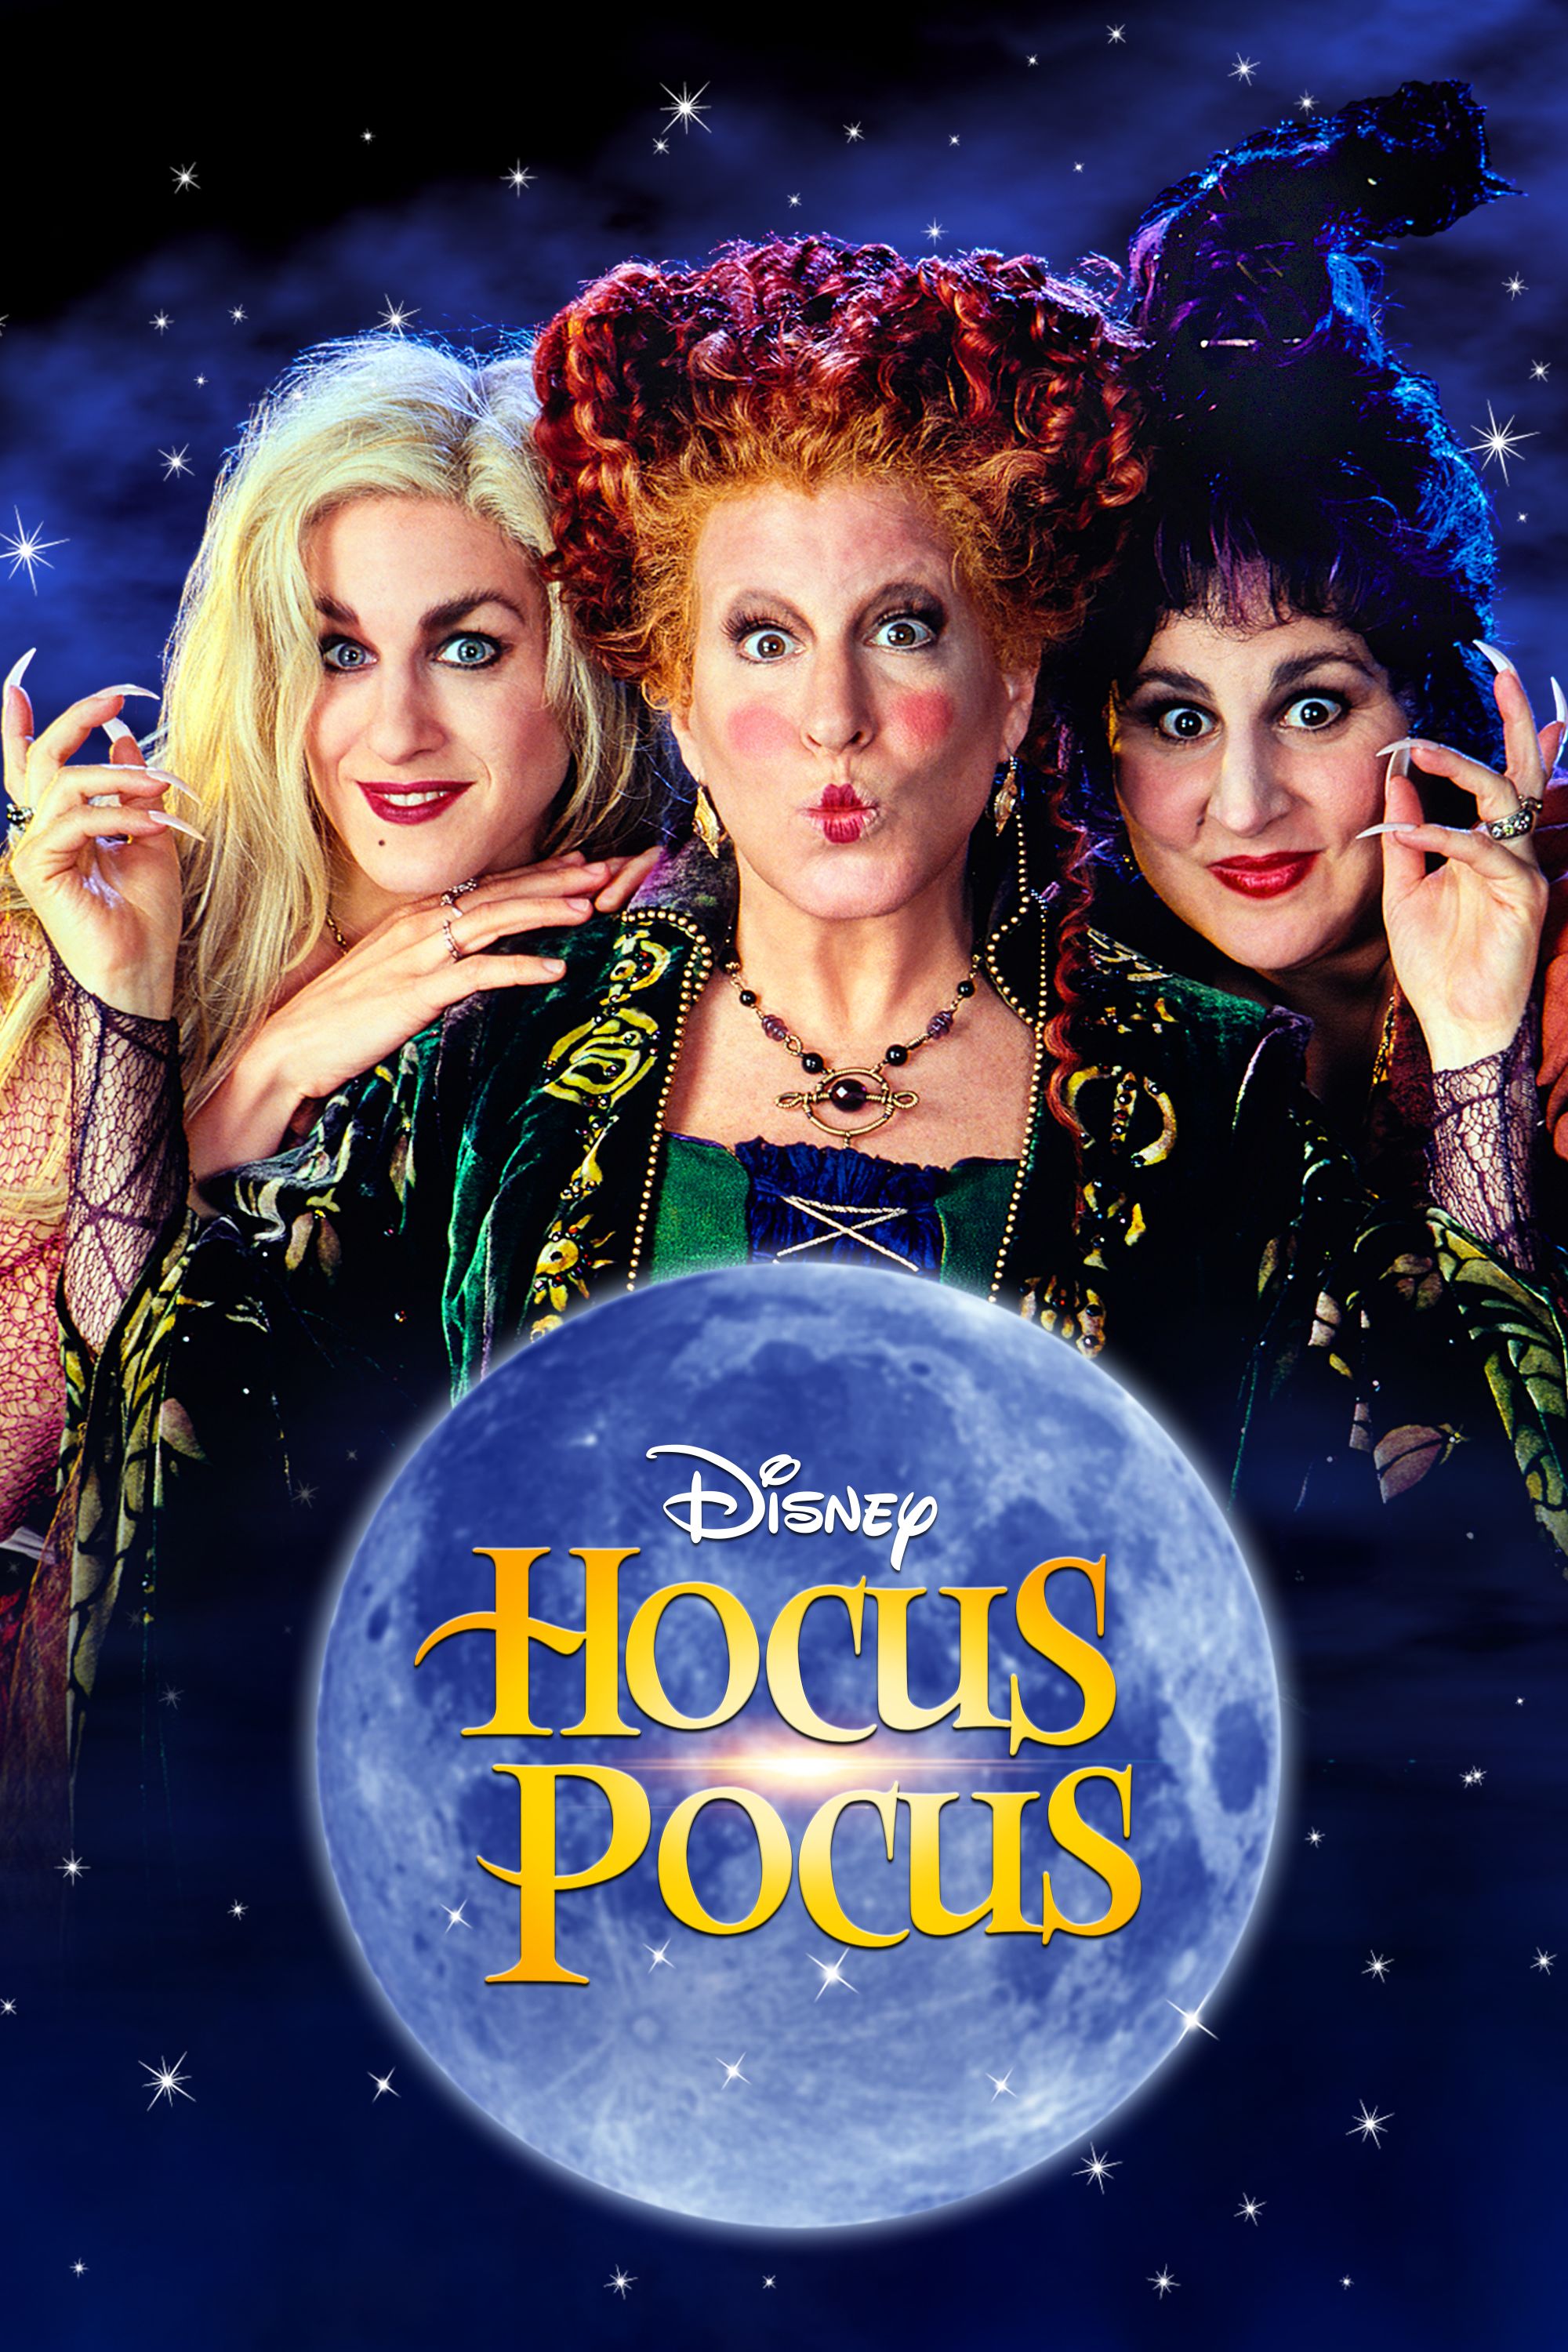 hocus pocus download full movie free